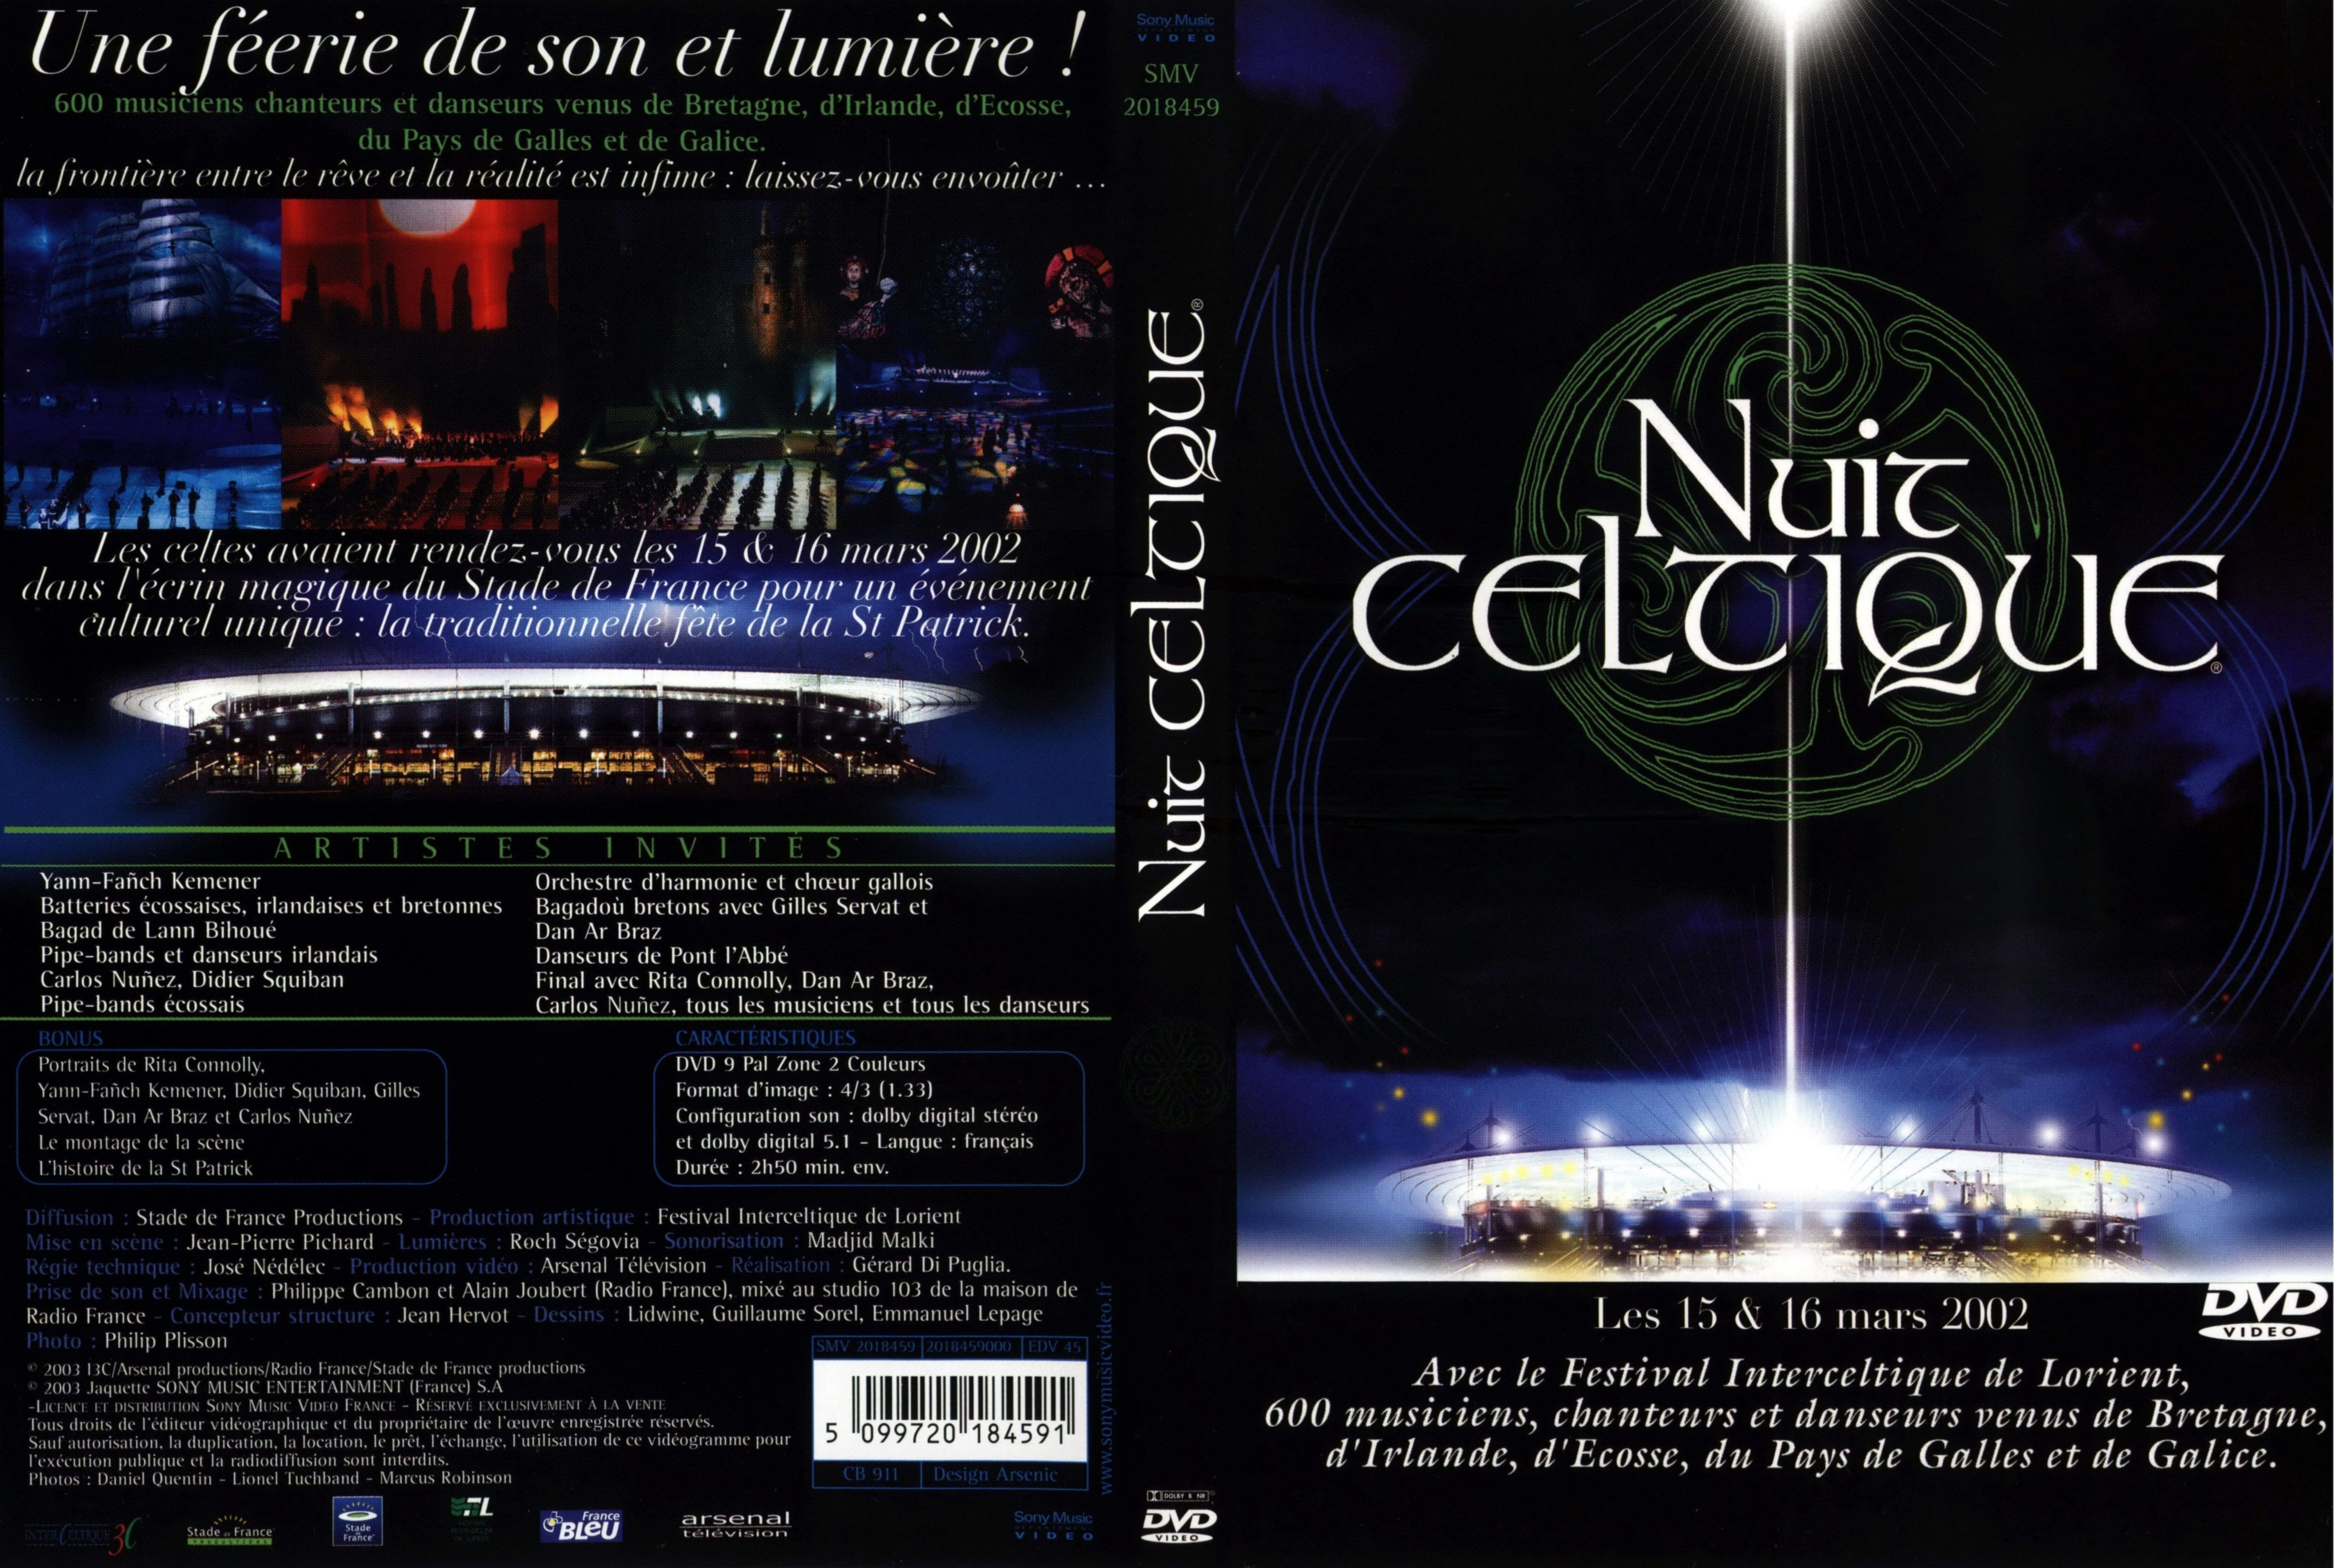 Jaquette DVD Nuit celtique